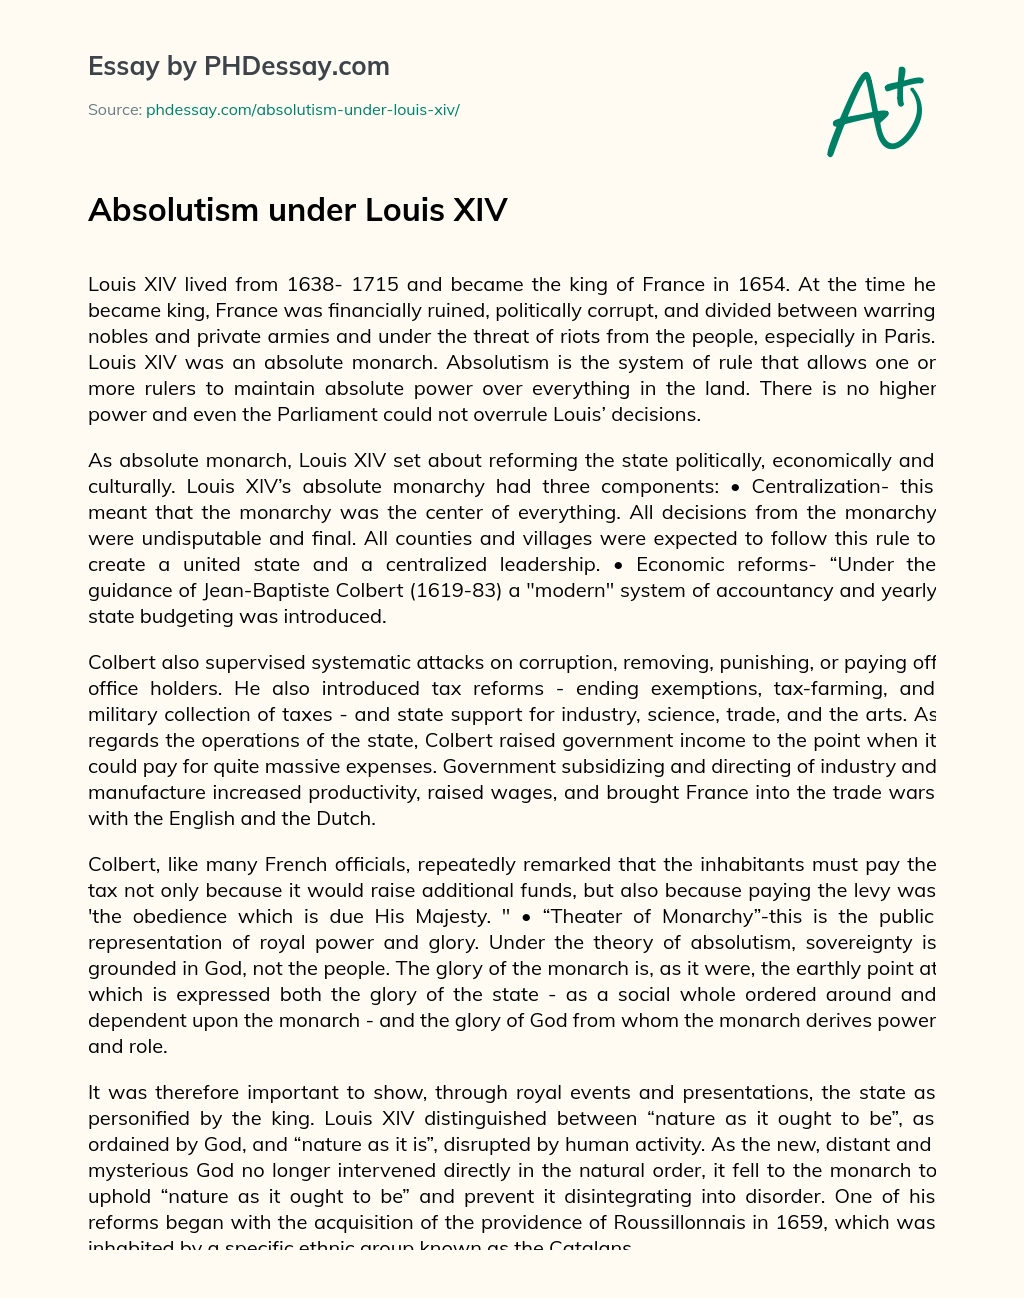 Absolutism under Louis XIV essay